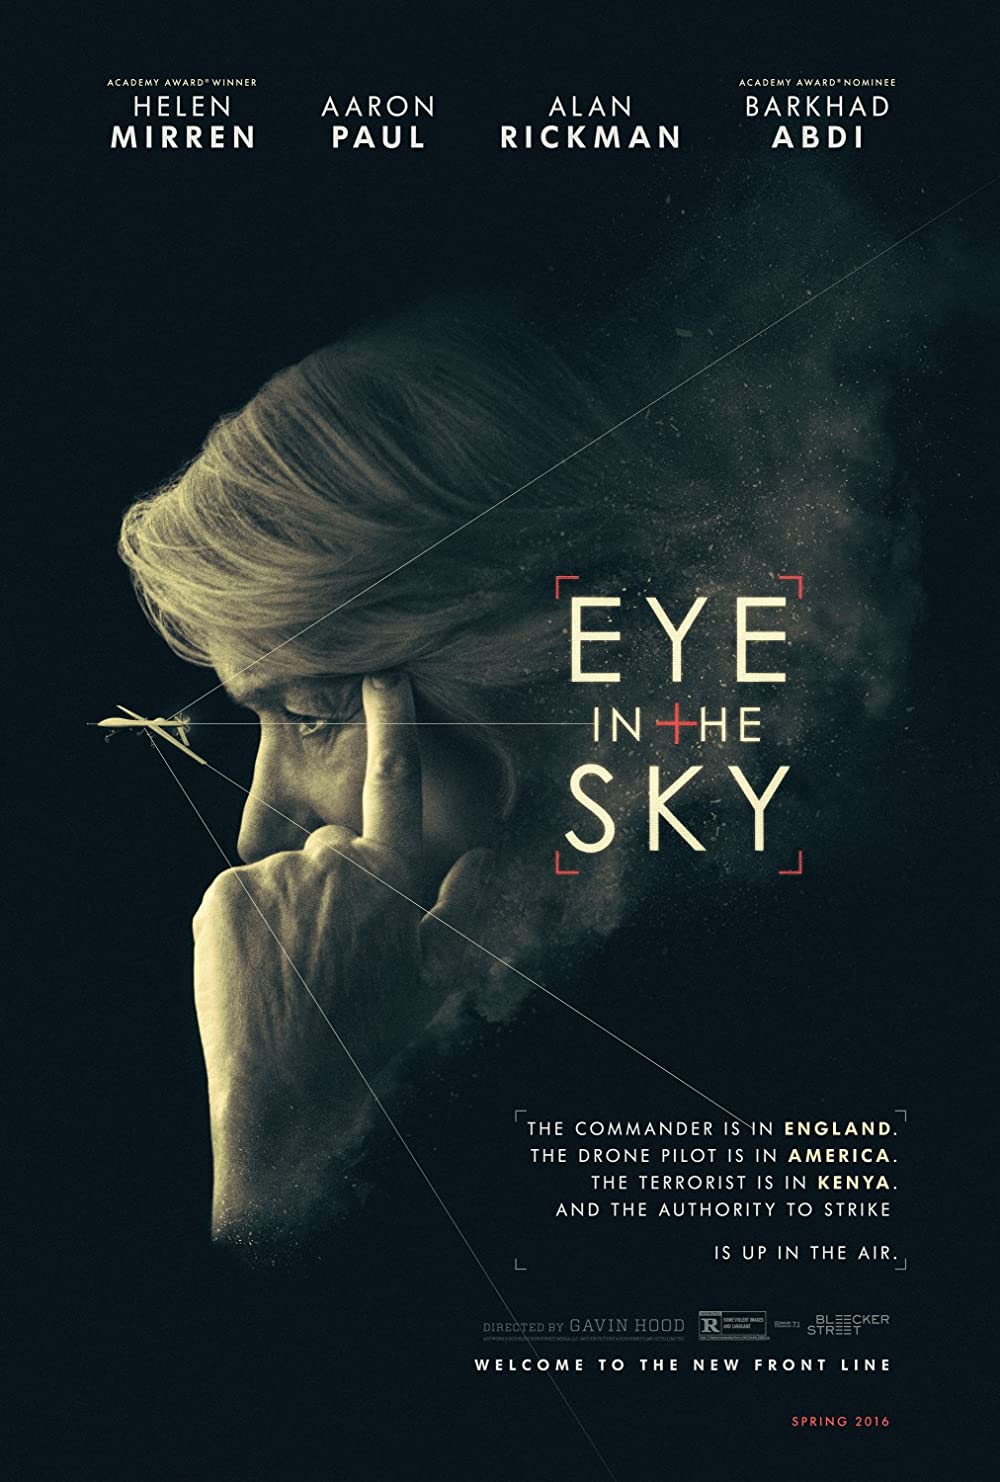 Filmbeschreibung zu Eye in the Sky